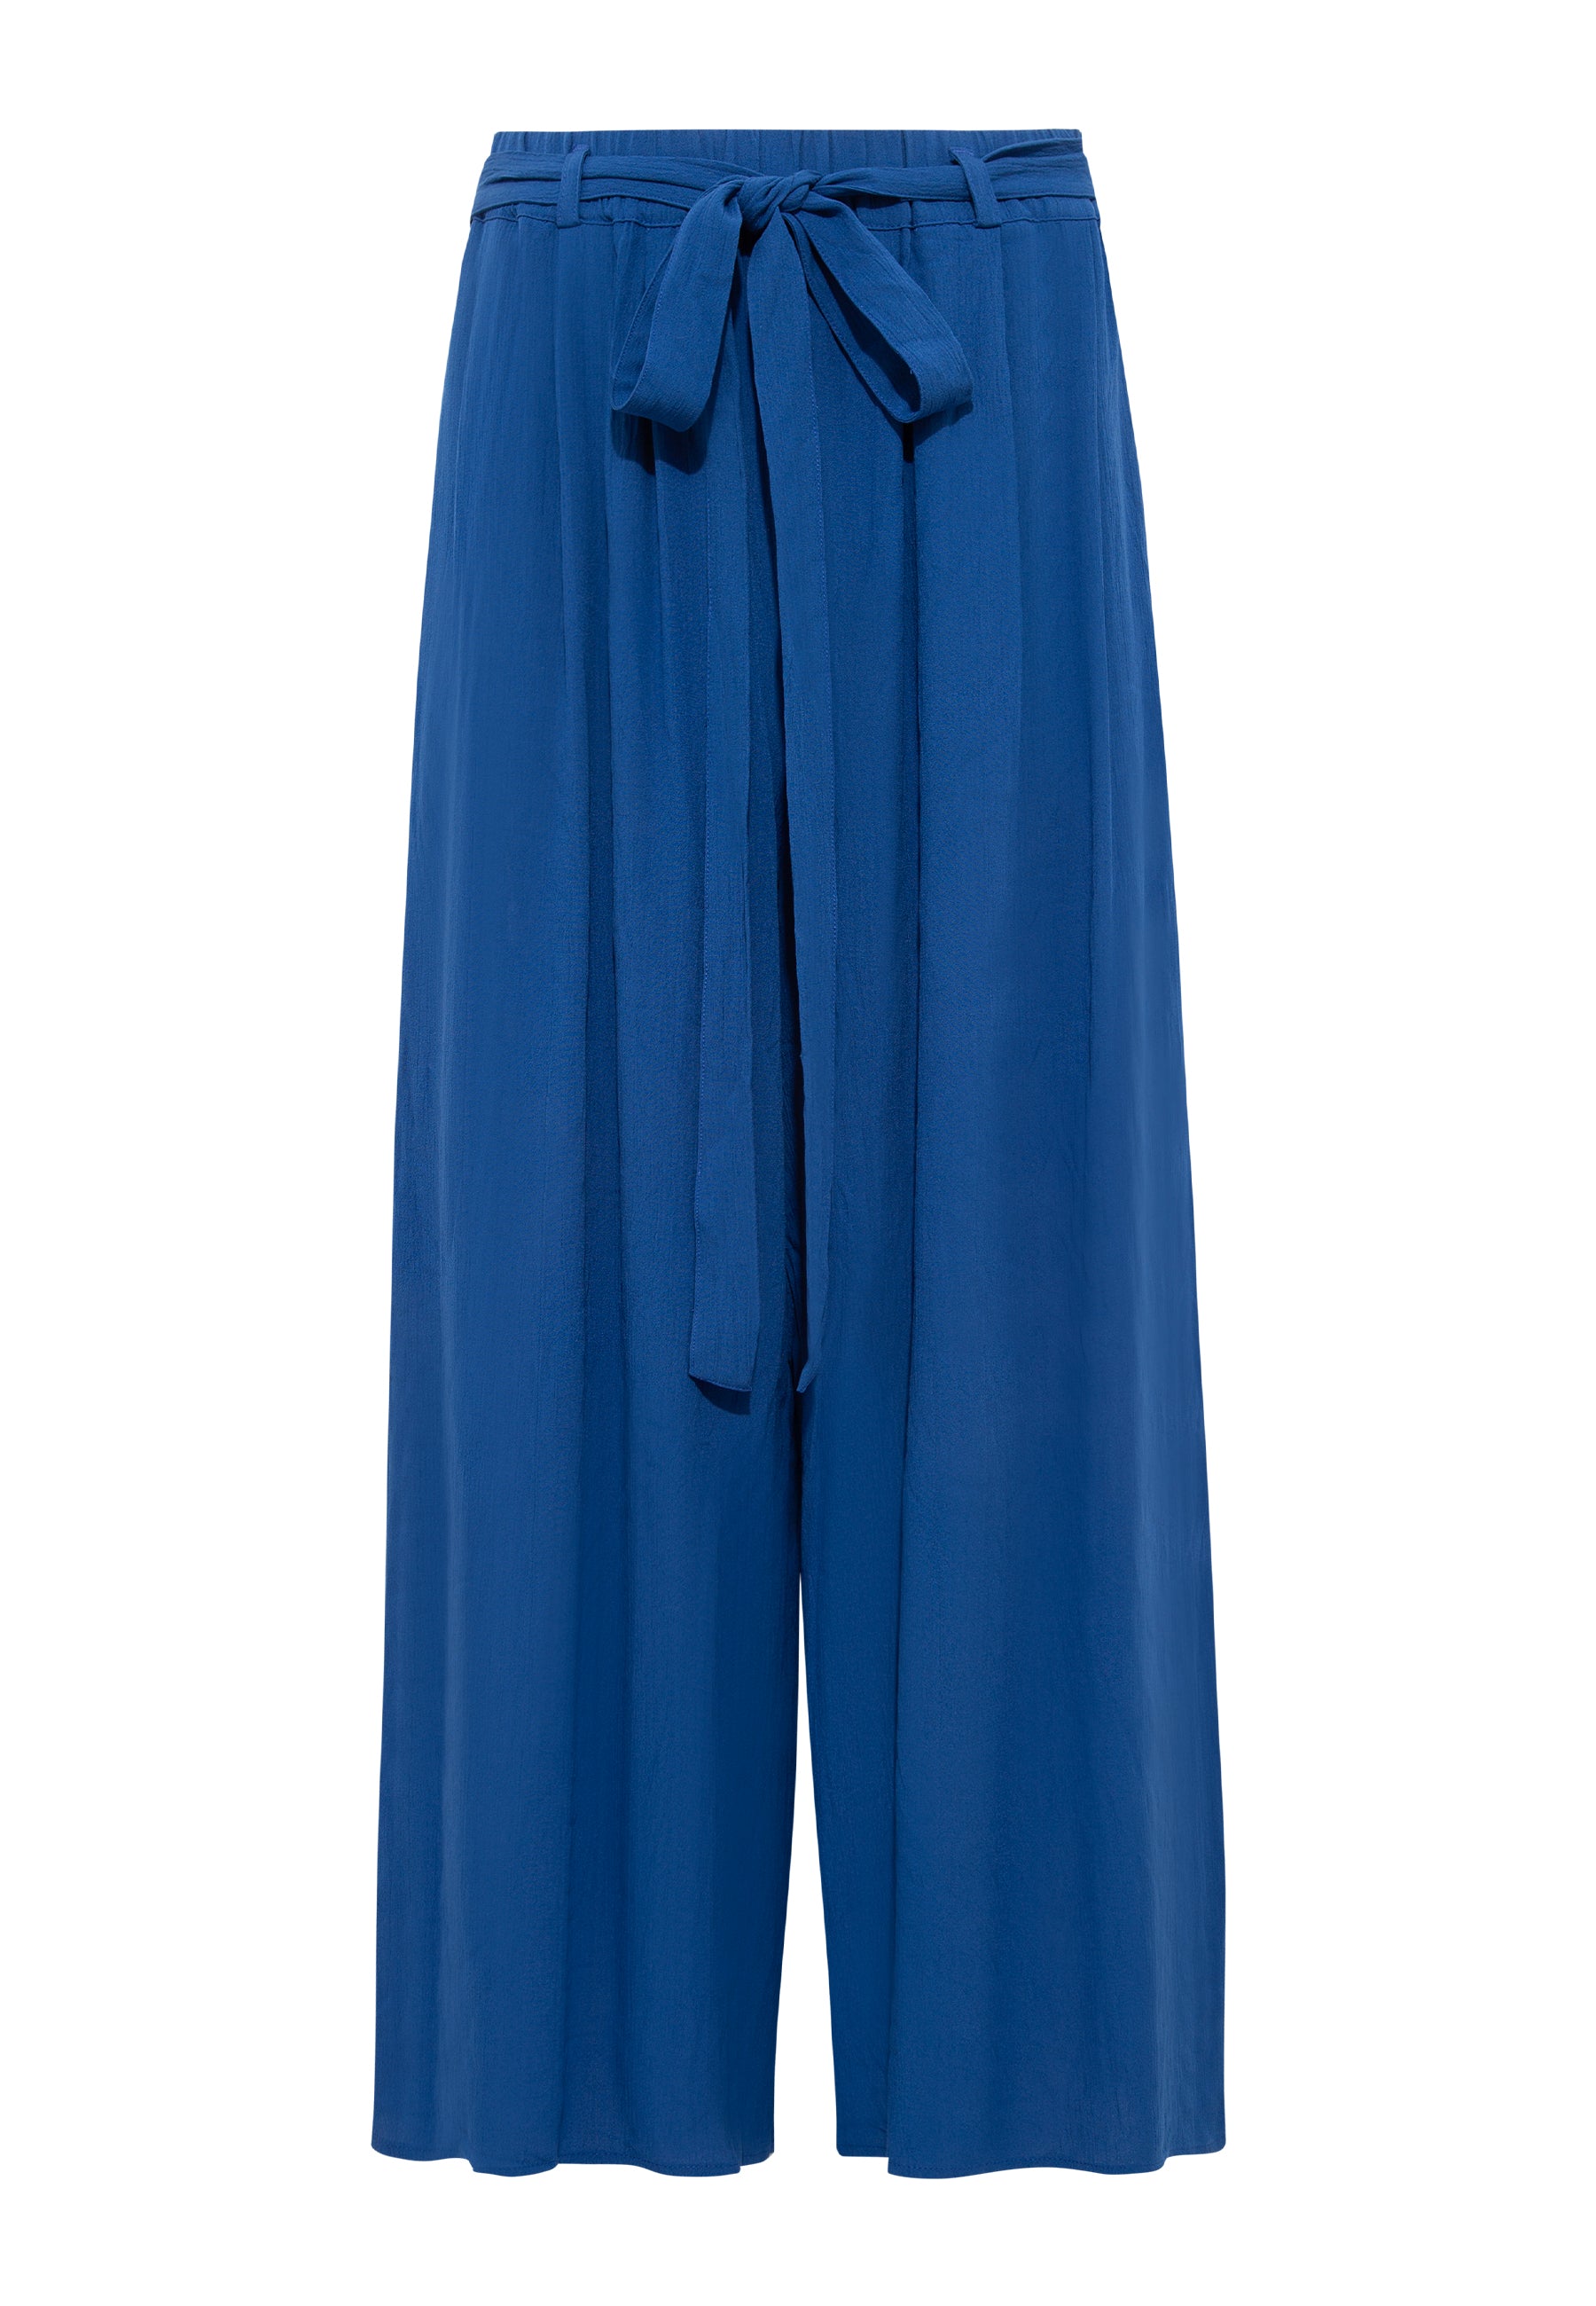 Woven Pants in True Blue Hosen Mavi   